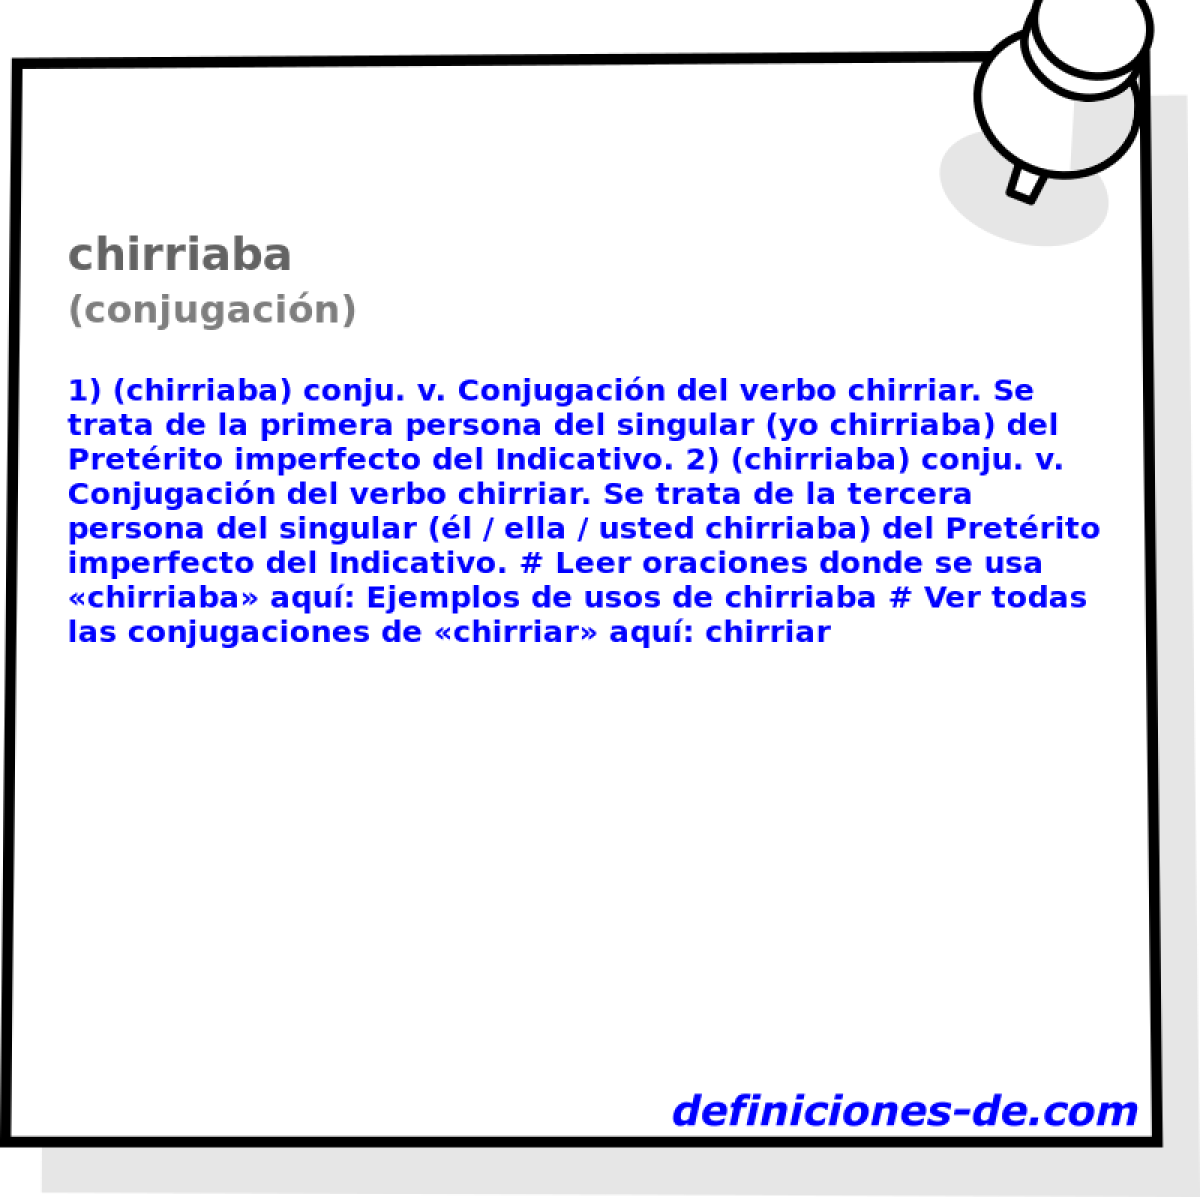 chirriaba (conjugacin)